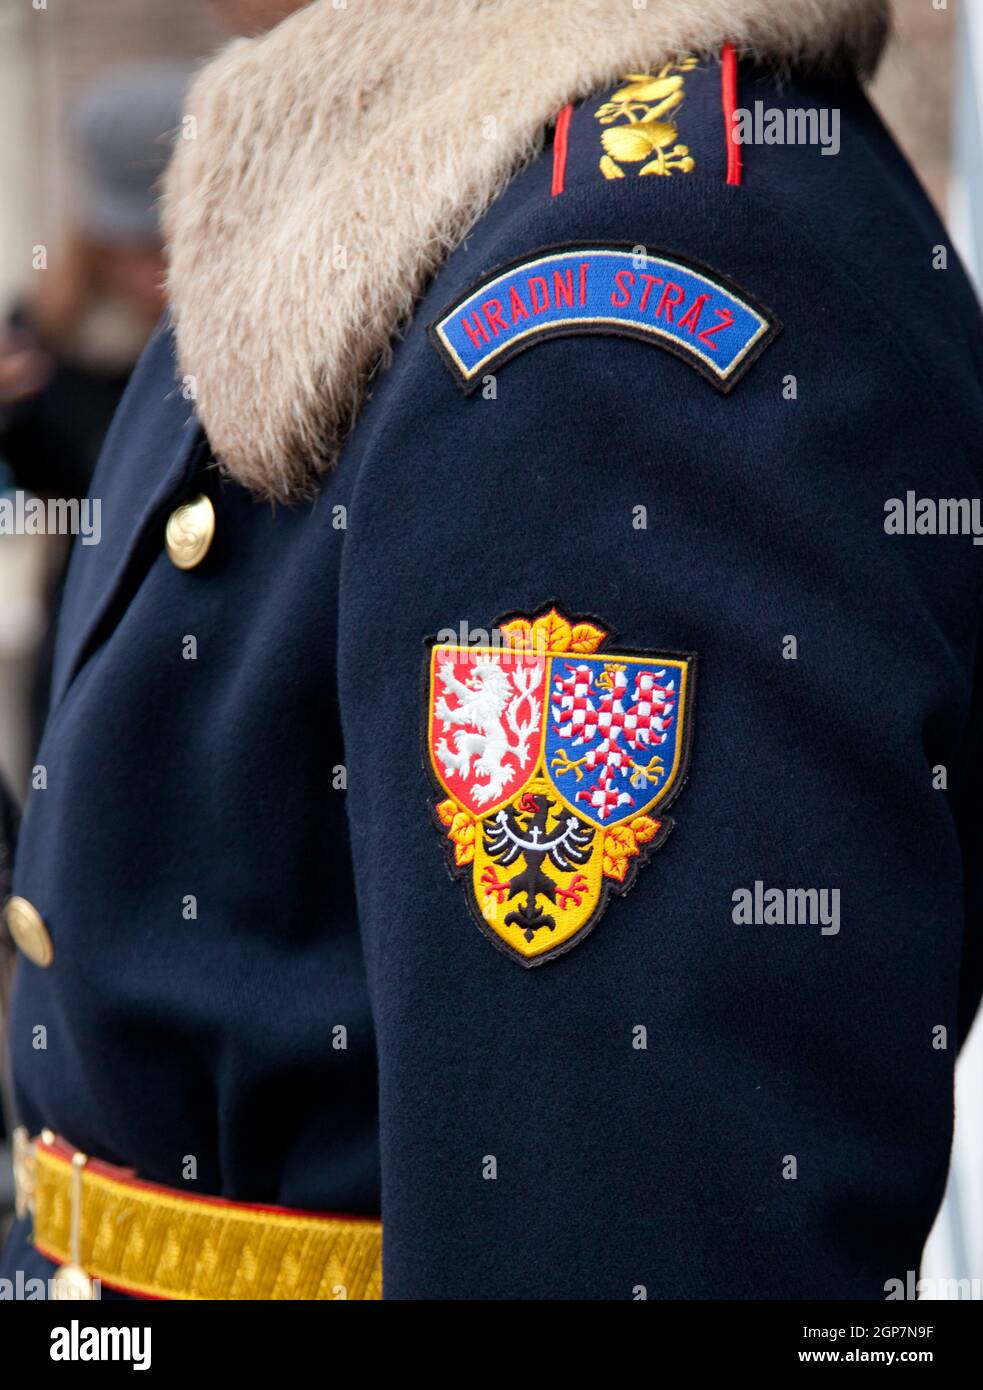 Guardia del Castello di Praga, Hradni Straz di fronte al Castello. Hradni Straz è una guardia militare formale che protegge il presidente ceco. Foto Stock